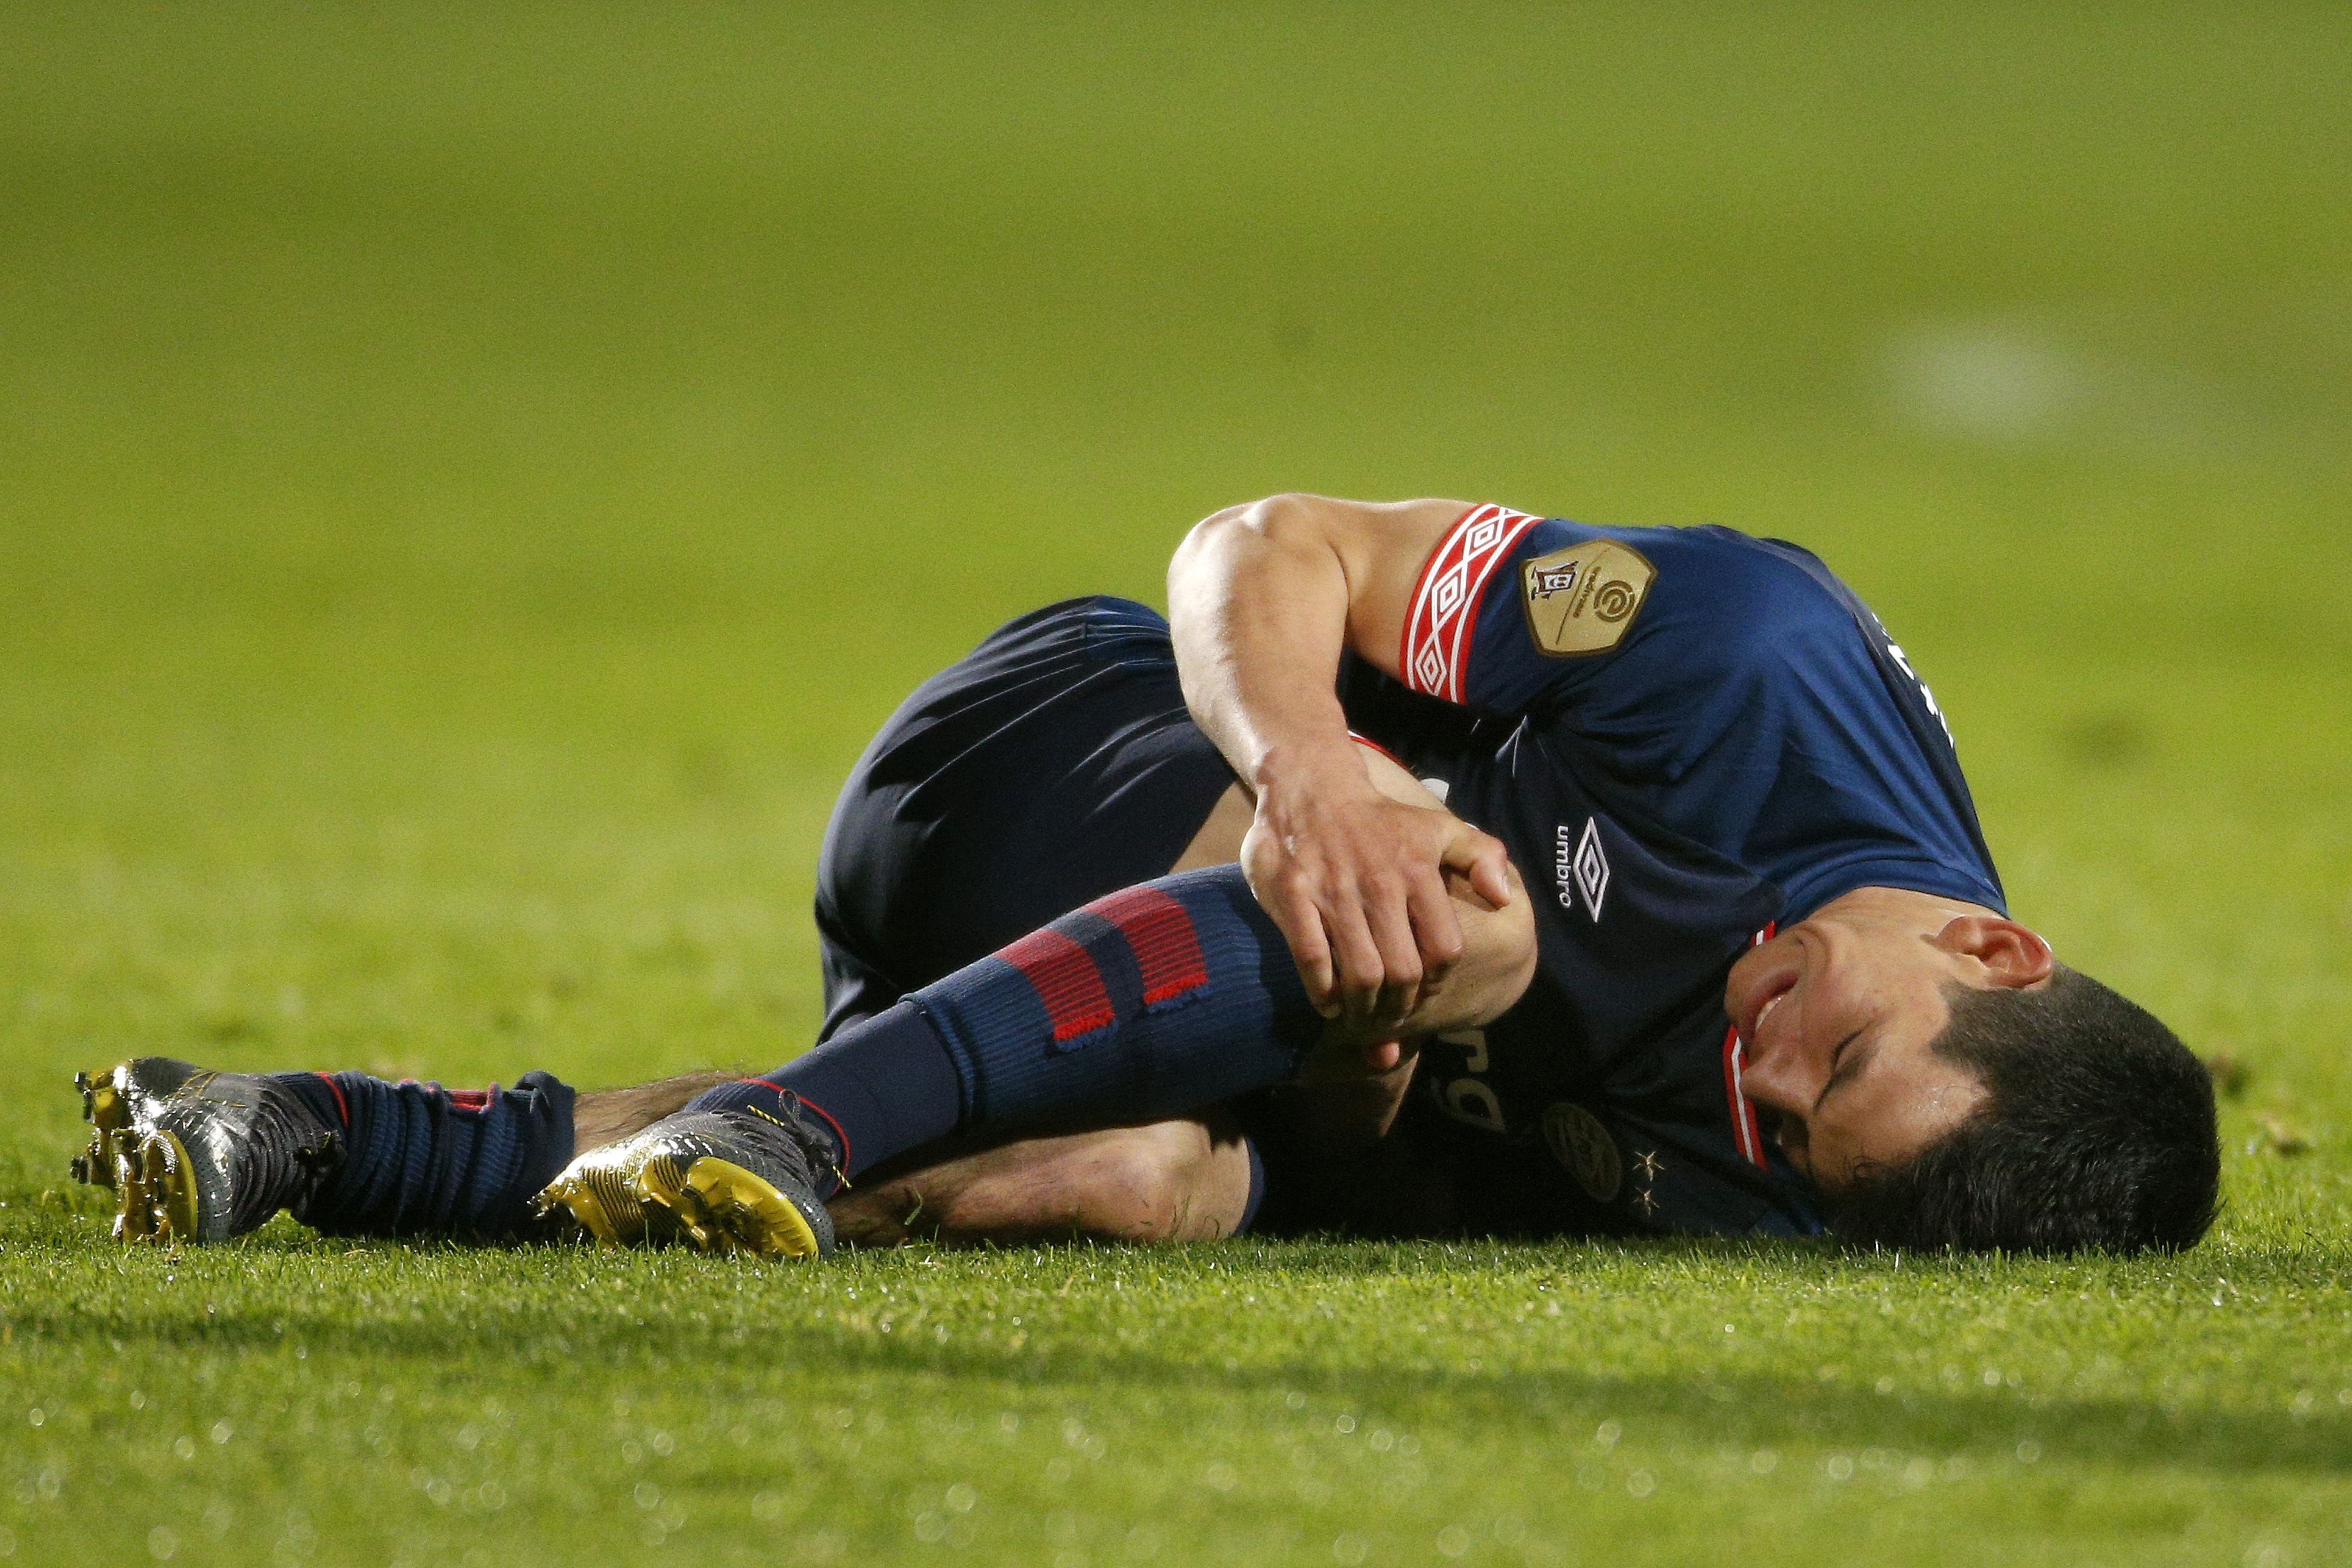 Hirving Lozano de PSV cae luego de una falta este jueves en un partido del torneo holandés Eredivisie. (Foto Prensa Libre: EFE)